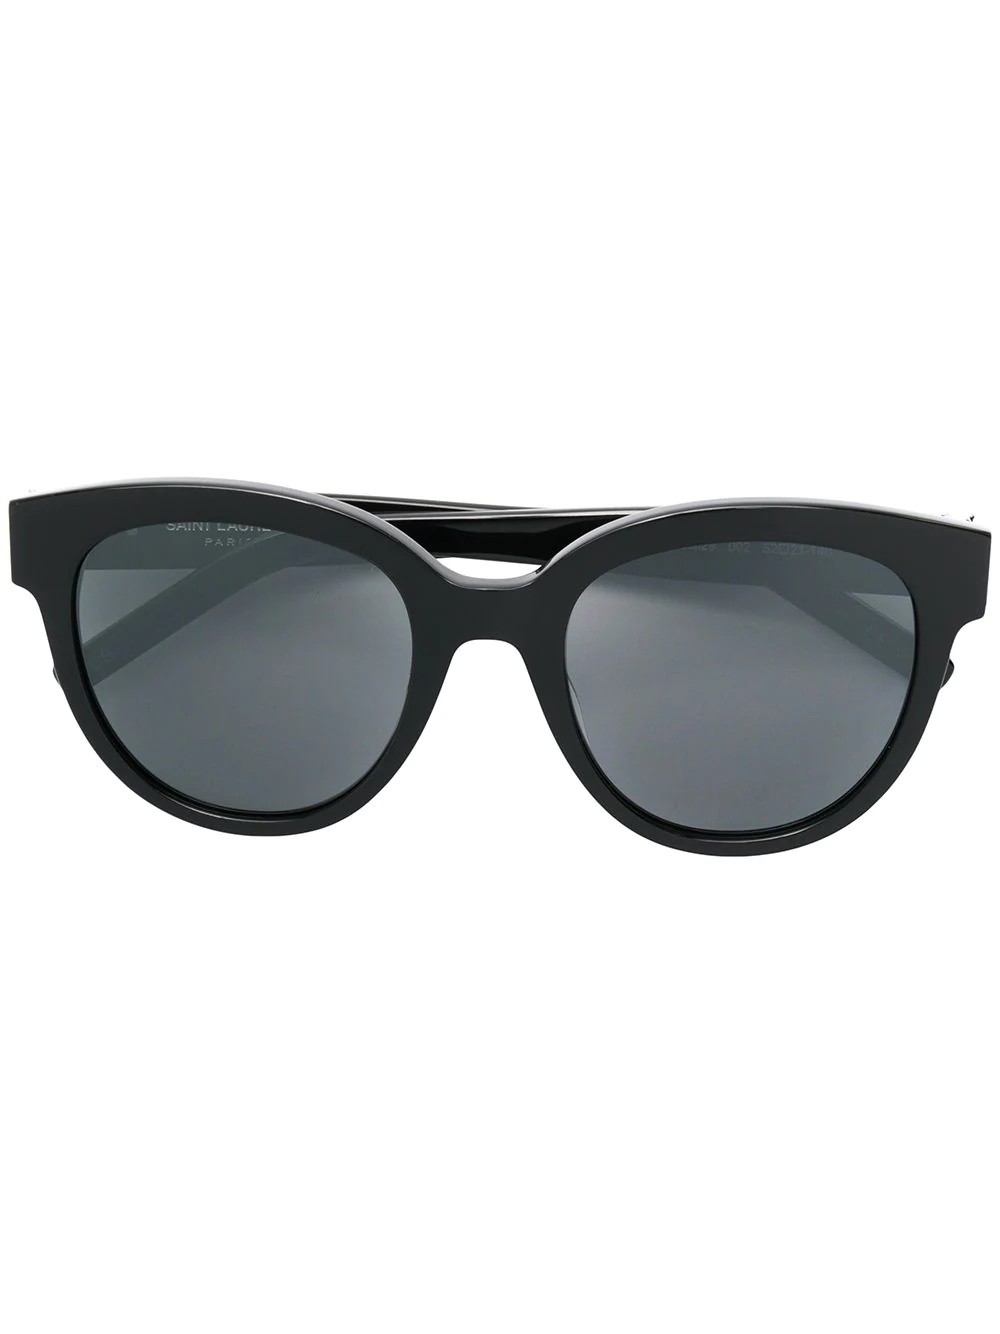 monogram round sunglasses - 1